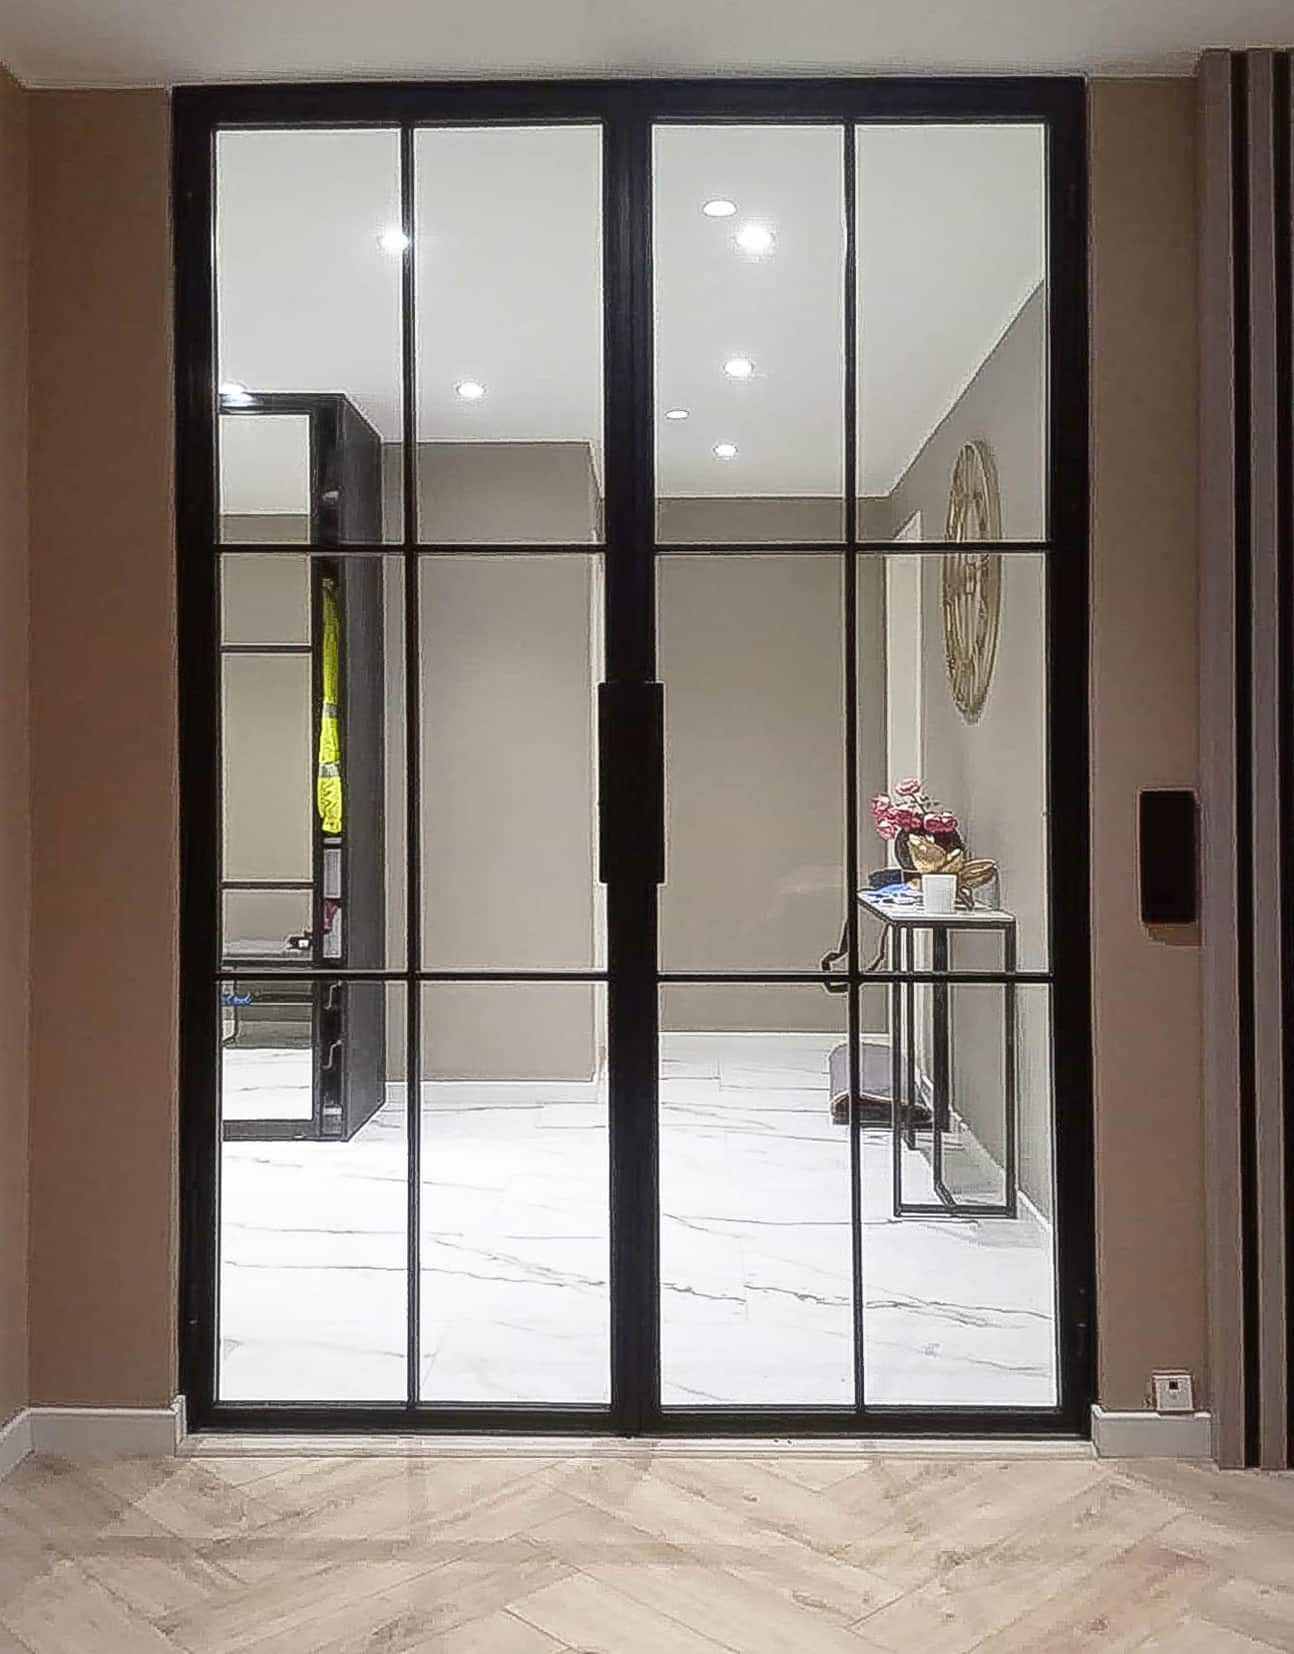 Lofttür zweiflügelig doppelflügelig, Glas-Tür mit Stahlrahmen, für Diele, Eingangsberich minimalistisch, modernes Design, Industrie-Look, Abtrennung aus Glas, Bauhaus-Stil